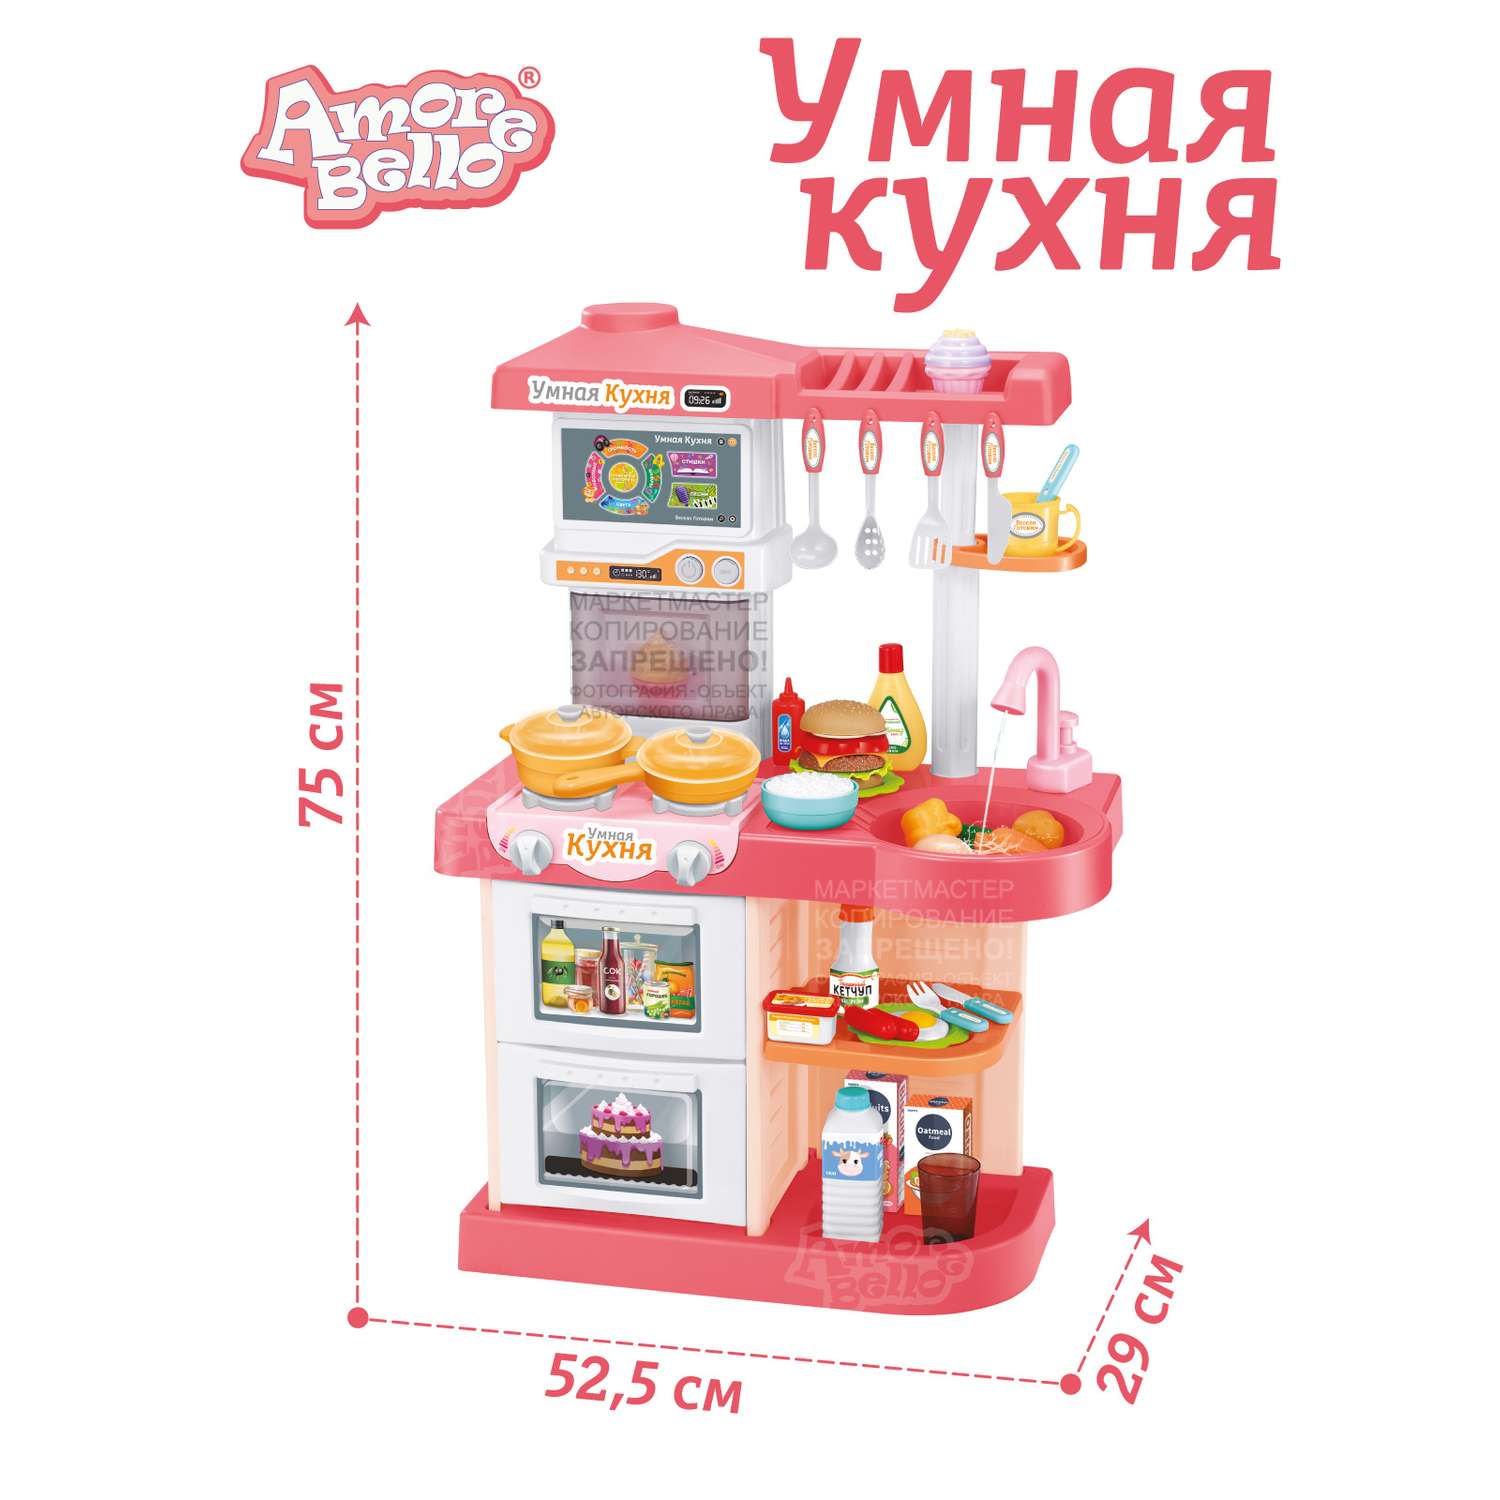 Игровой набор детский AMORE BELLO Умная Кухня с пультом с паром и кран с водой игрушечные продукты и посуда JB0209161 - фото 7